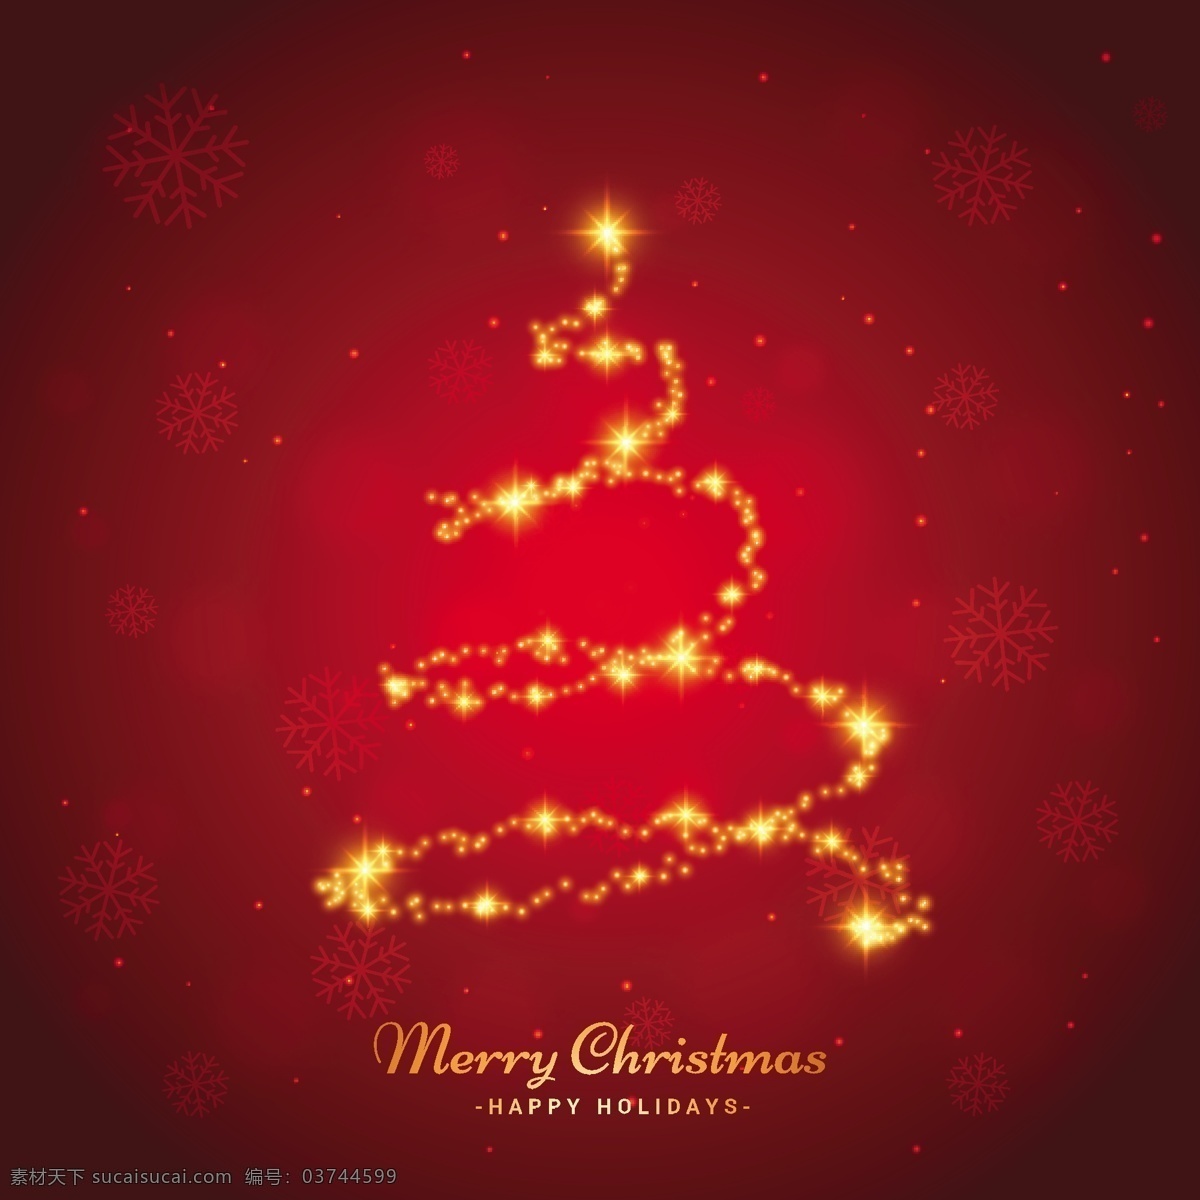 闪亮的圣诞树 背景 圣诞树 明星卡 新的一年里 雪 圣诞快乐 冬天快乐 圣诞红 圣诞卡 圣诞 红色背景 庆典 节日 新 冰